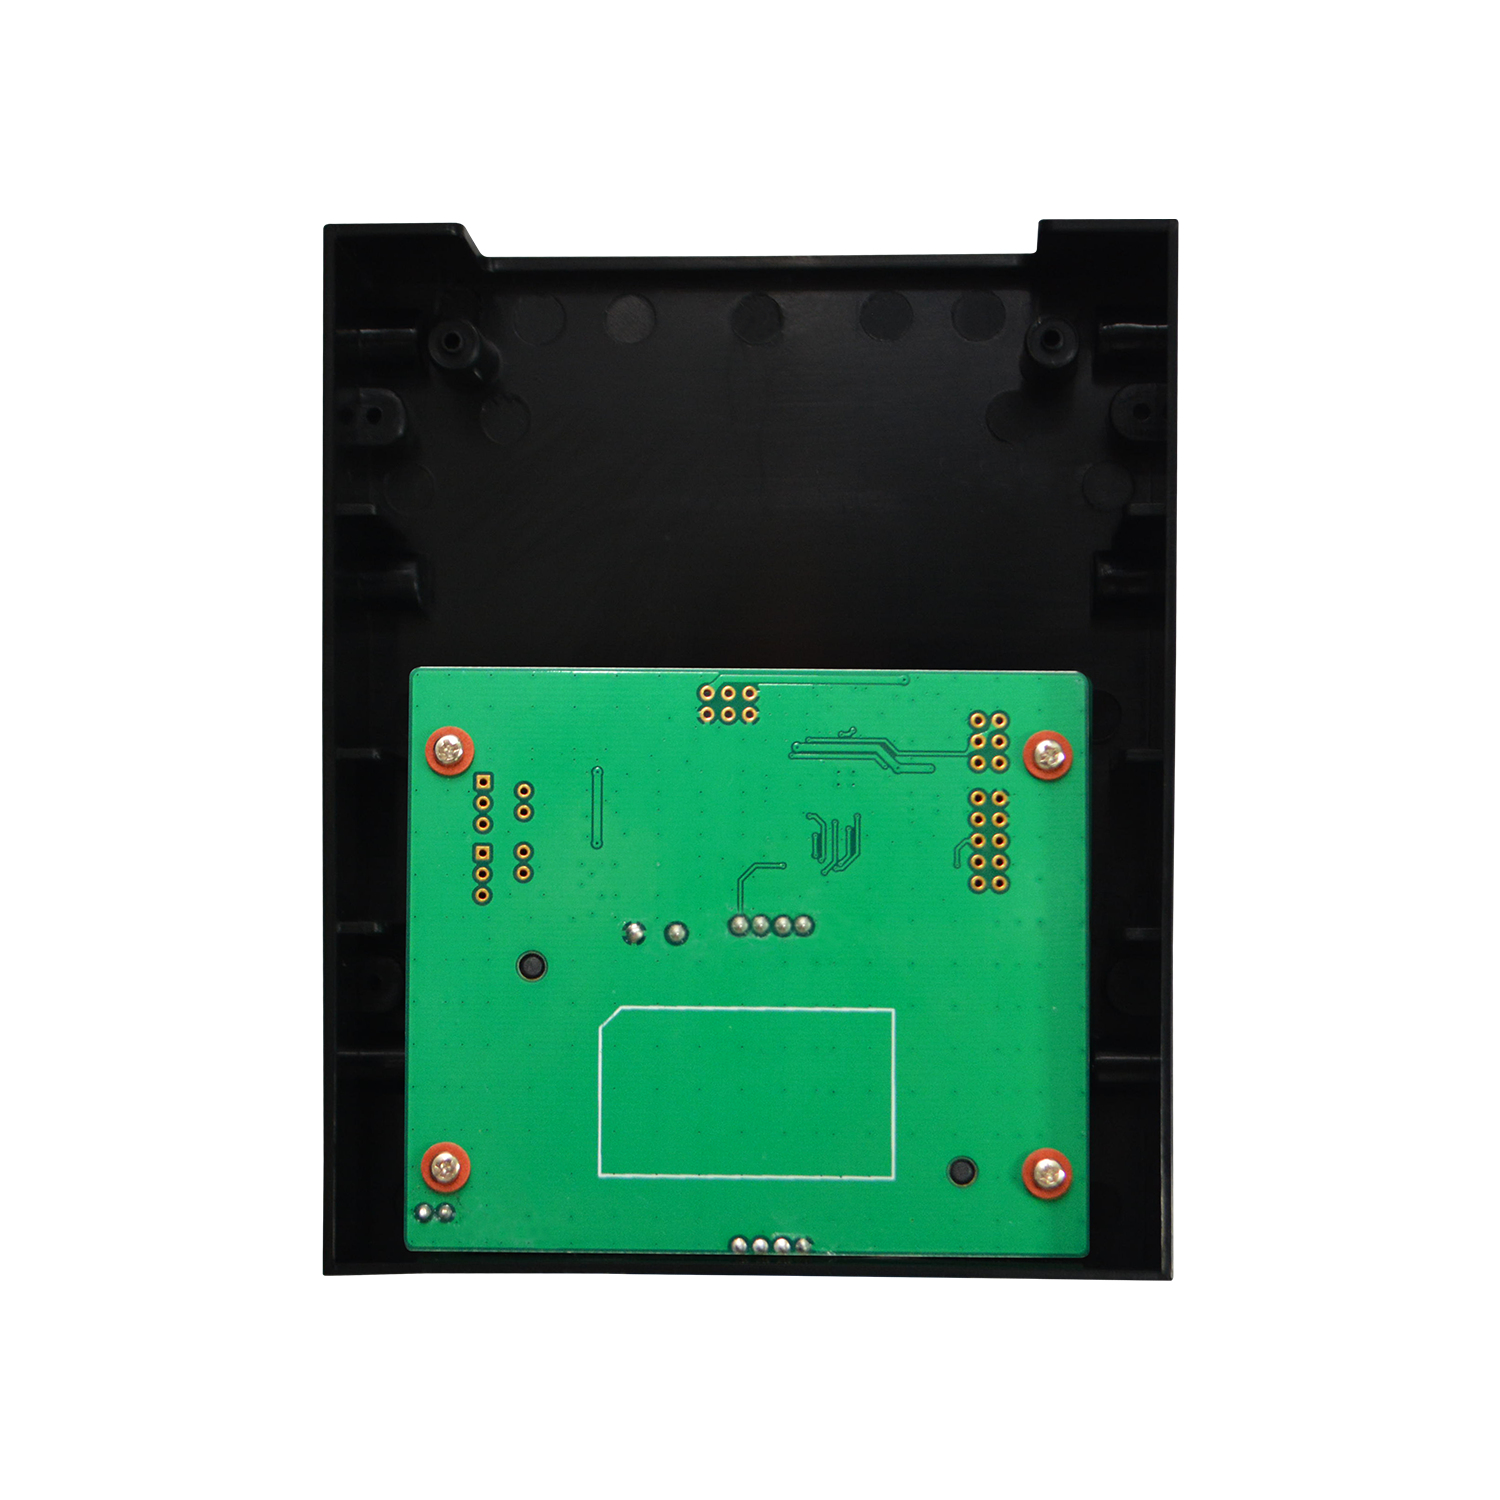 ACS ACR39F-A2 smart card reader Indoor USB 1.1 Black, Green